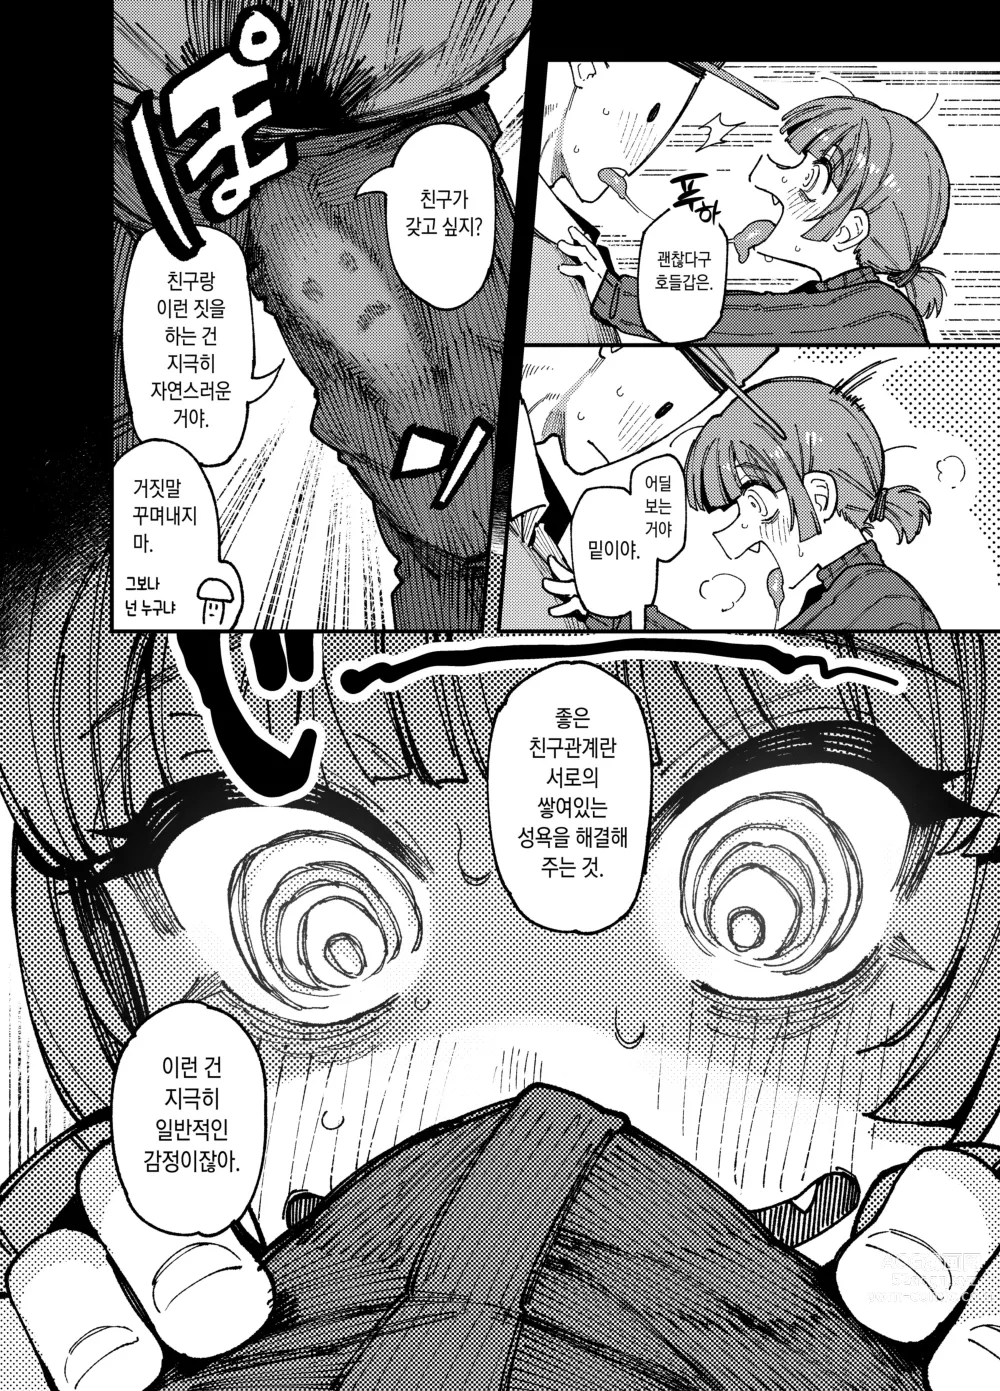 Page 13 of doujinshi 집이 너무 습해서 생긴 환각을 유발하는 버섯을 잘못 먹고 발정난 뒤의 이야기